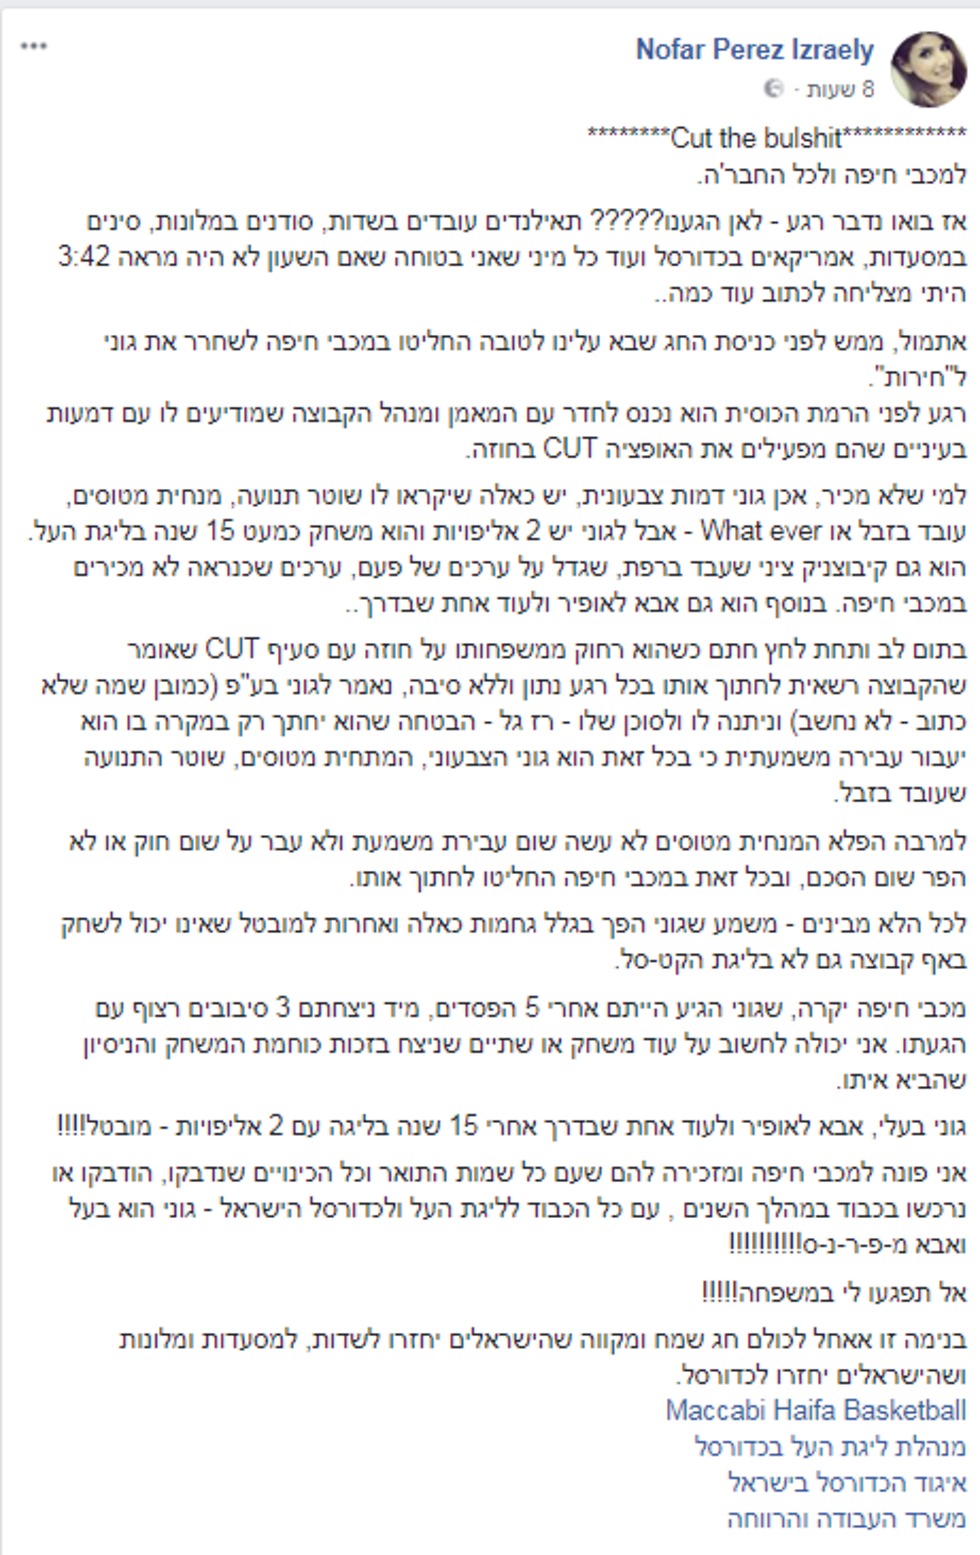 הפוסט של נופר יזרעאלי נגד מכבי חיפה (צילום מסך מתוך חשבון האינסטגרם של נופר יזרעאלי)